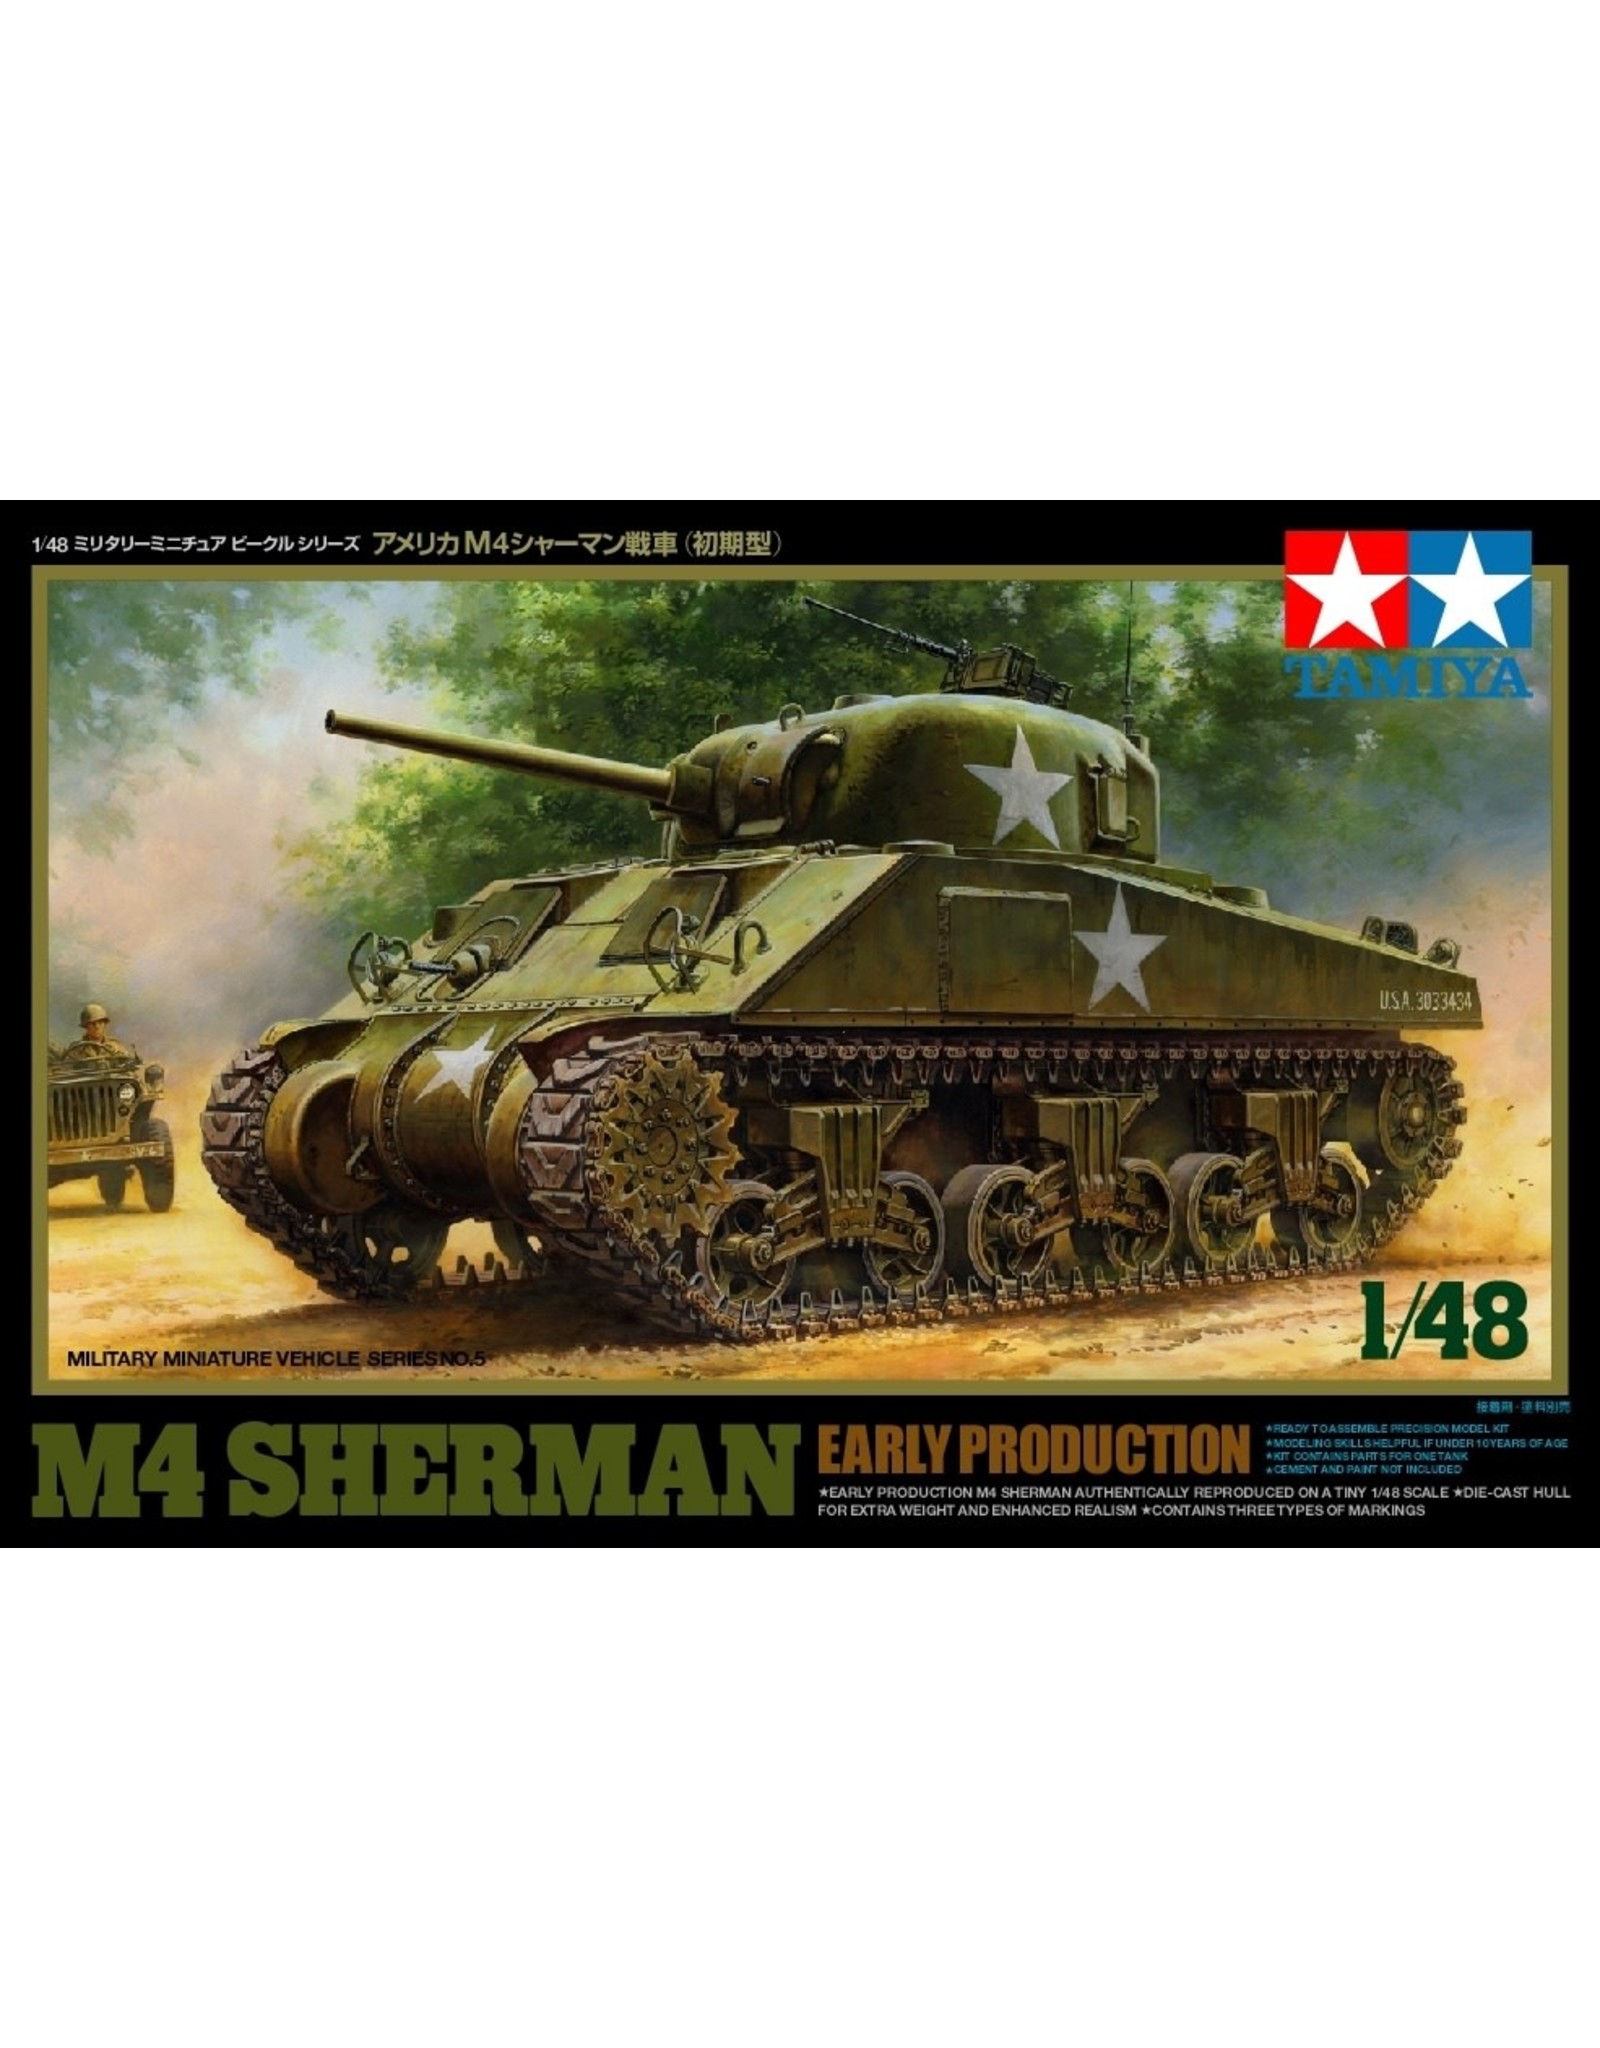 Tamiya M4 Sherman early production